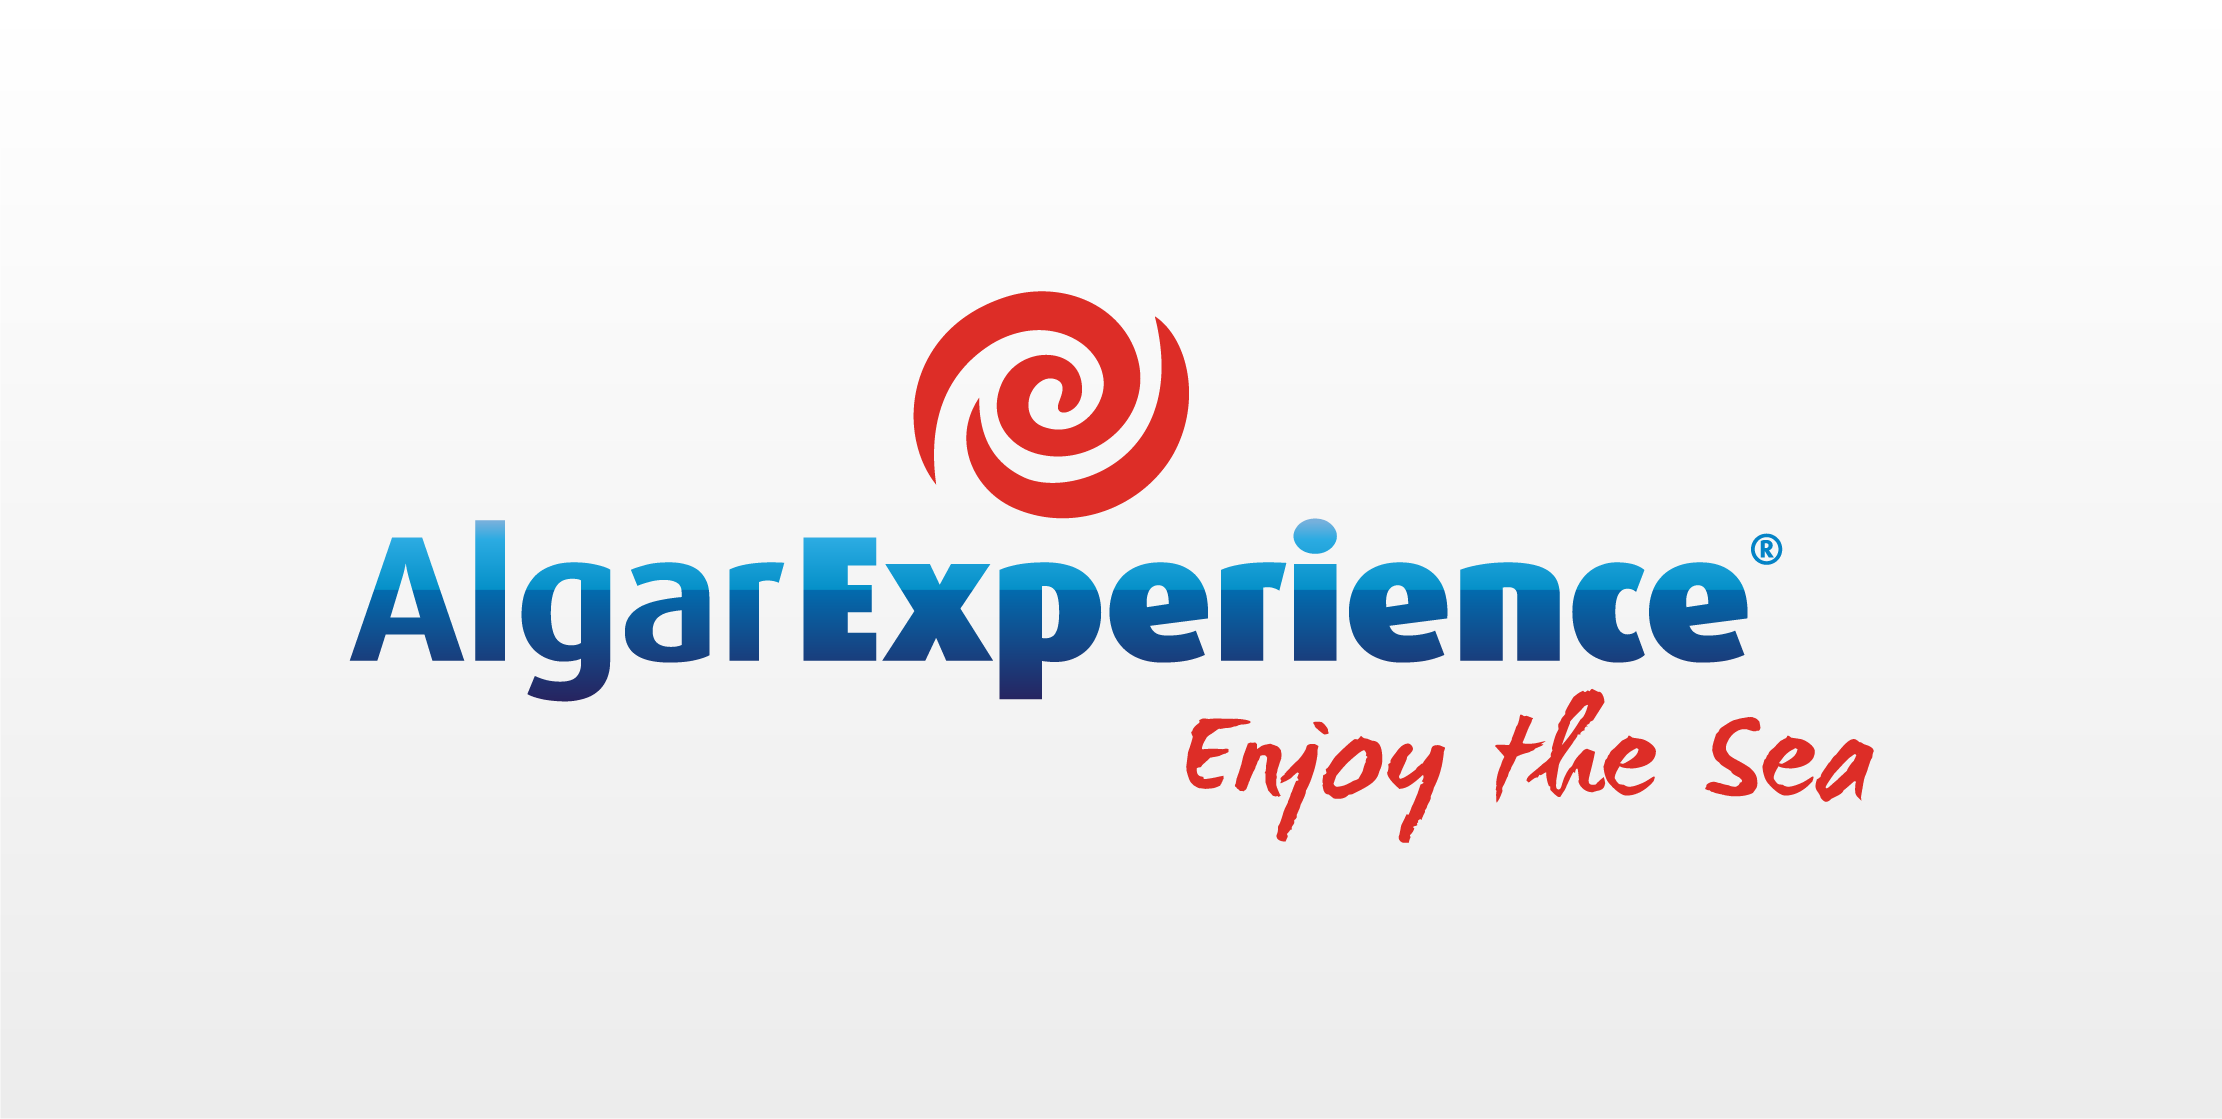 (c) Algarexperience.com